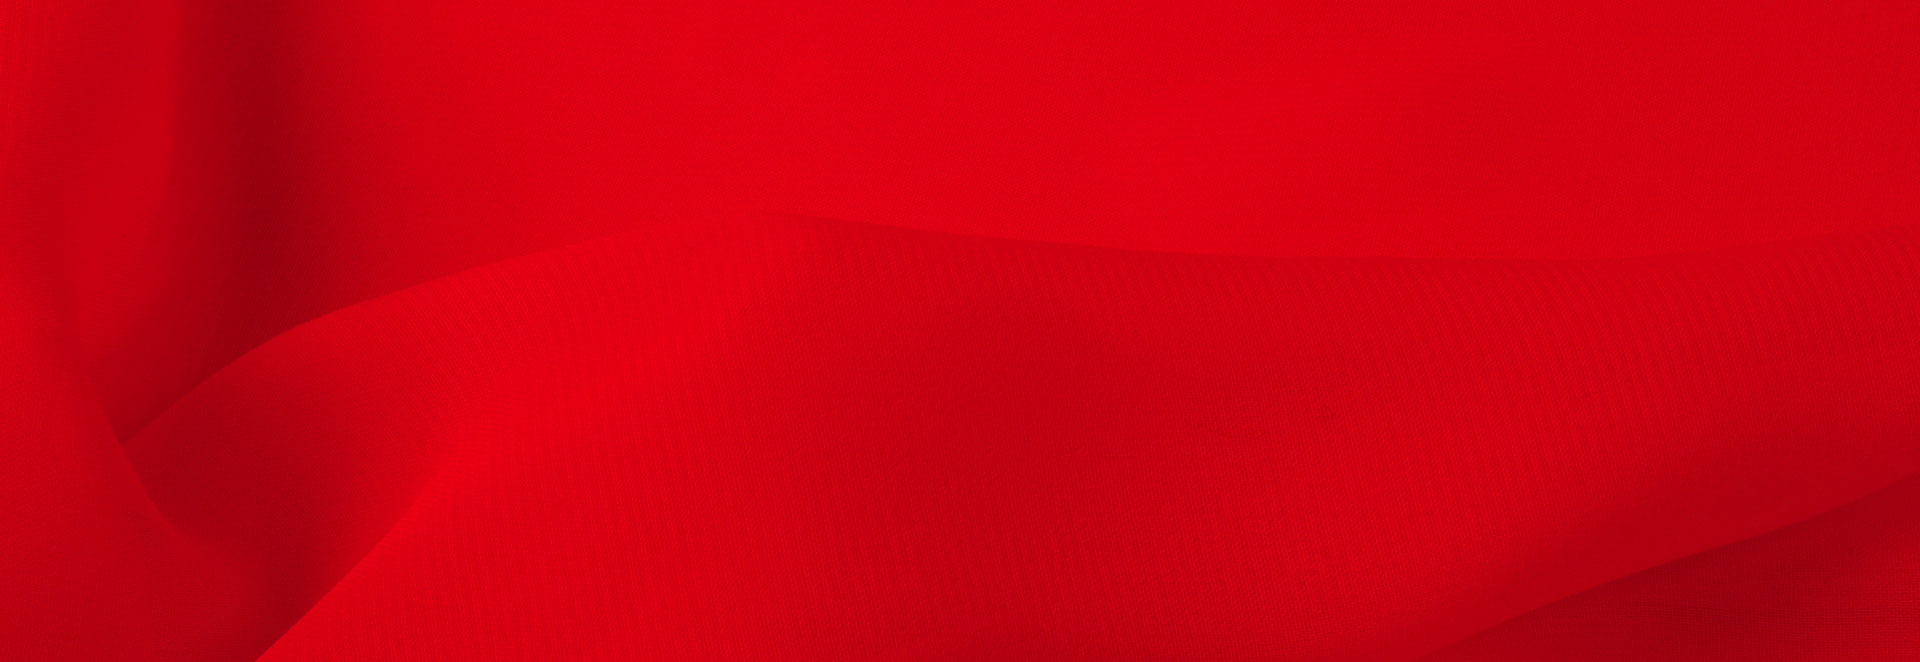 Hlavní baner červený podklad